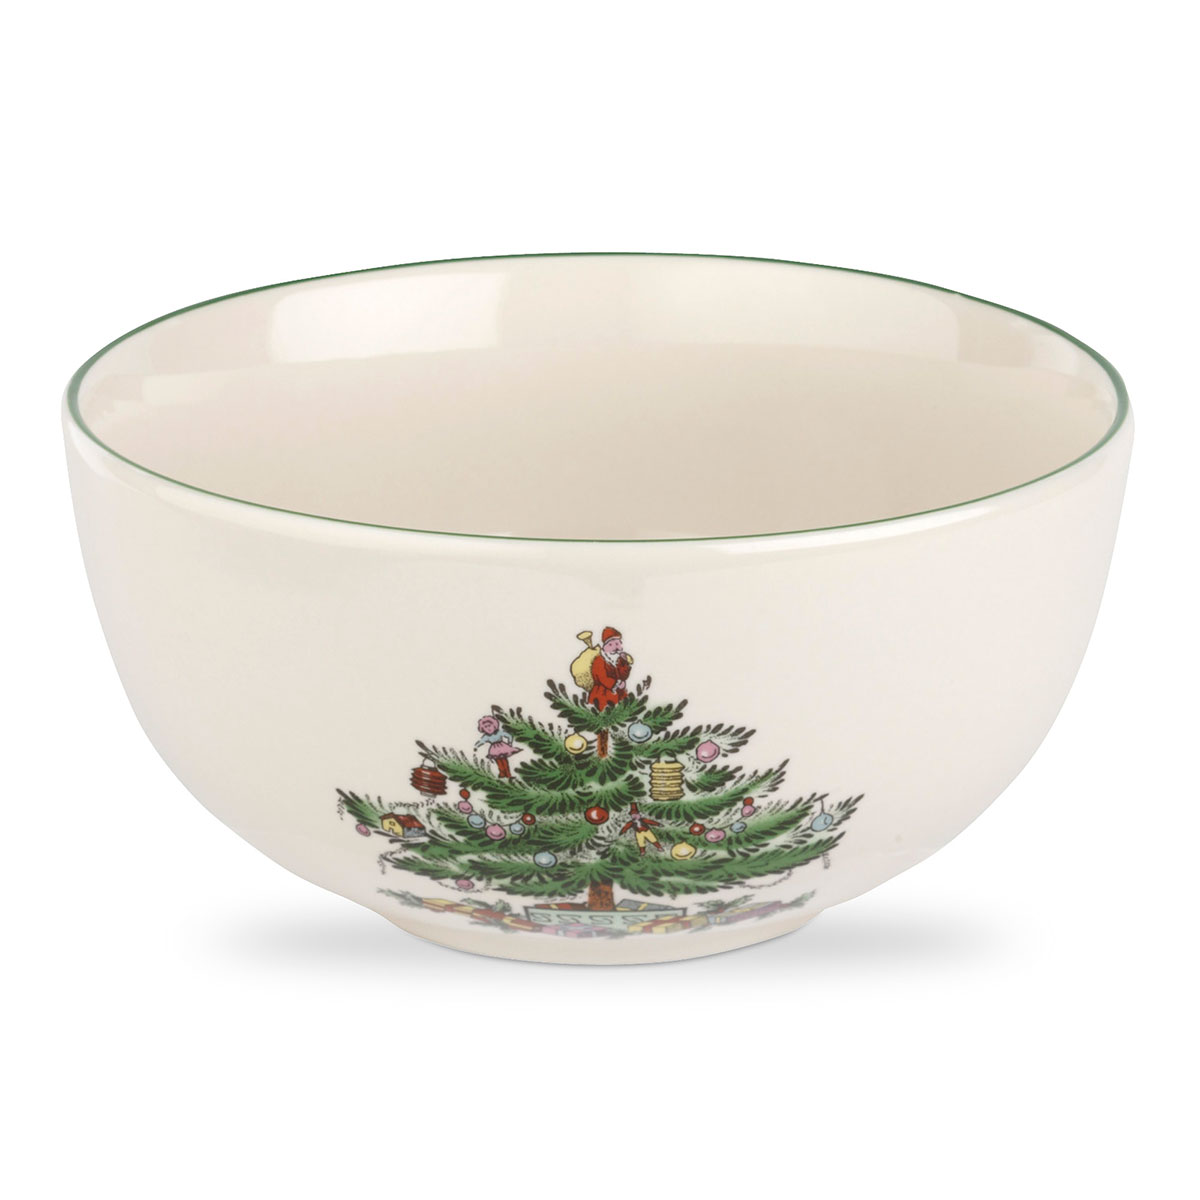 Spode Christmas Tree Fruit Salad Bowl